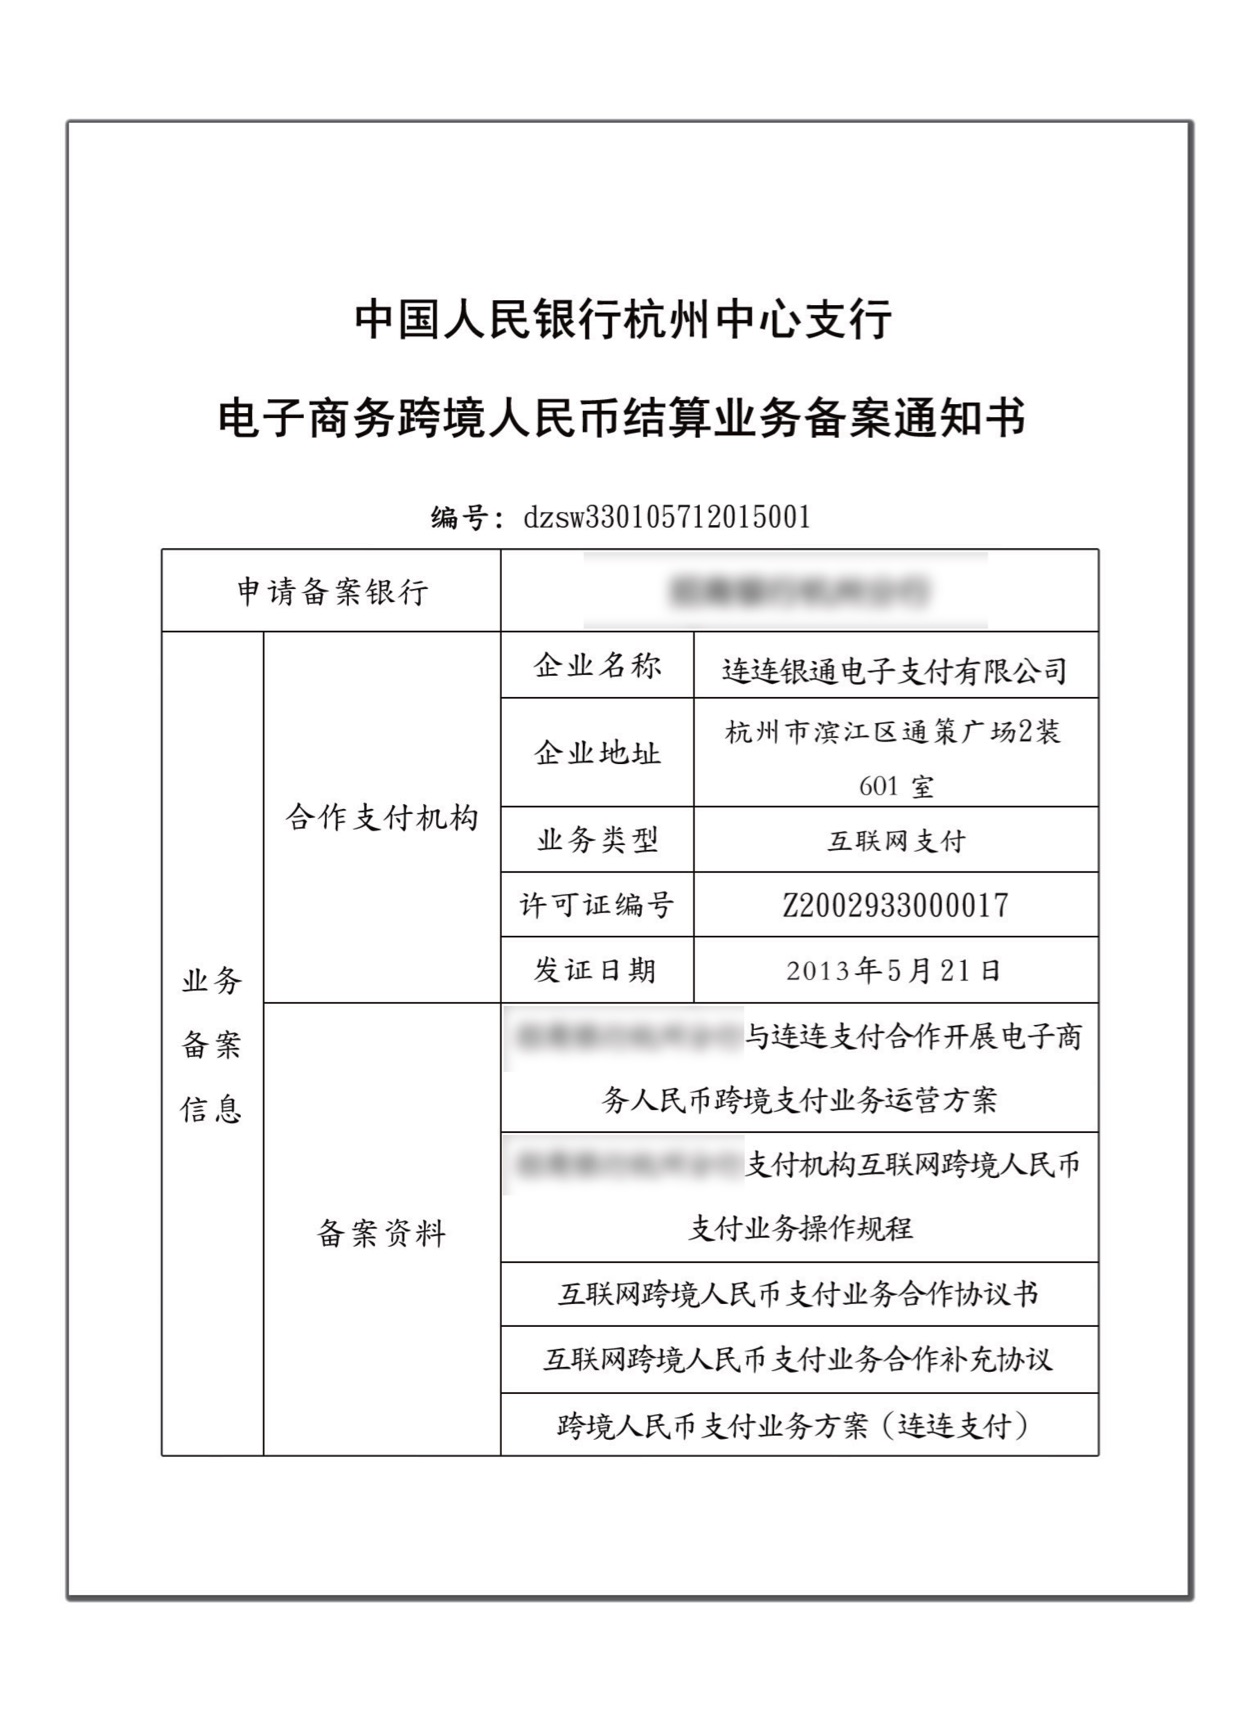 Cross-border RMB settlement business filing